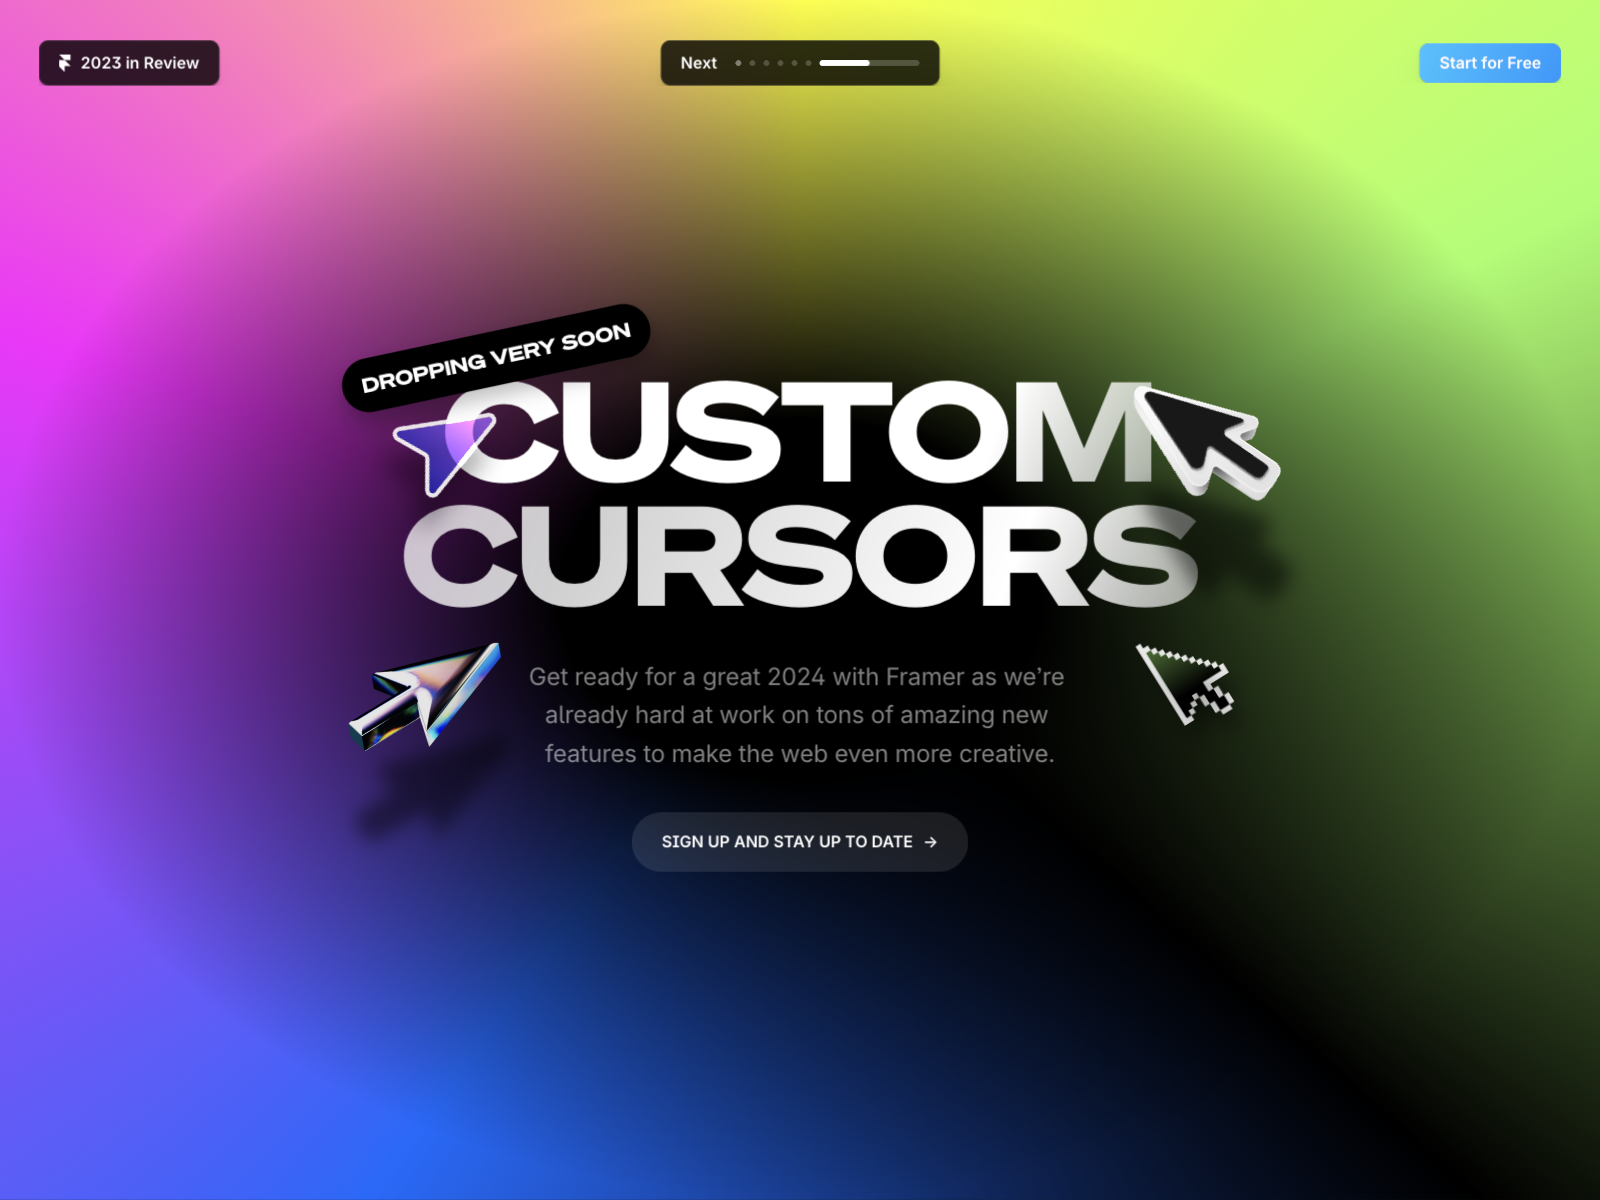 Custom Cursors Coming Soon